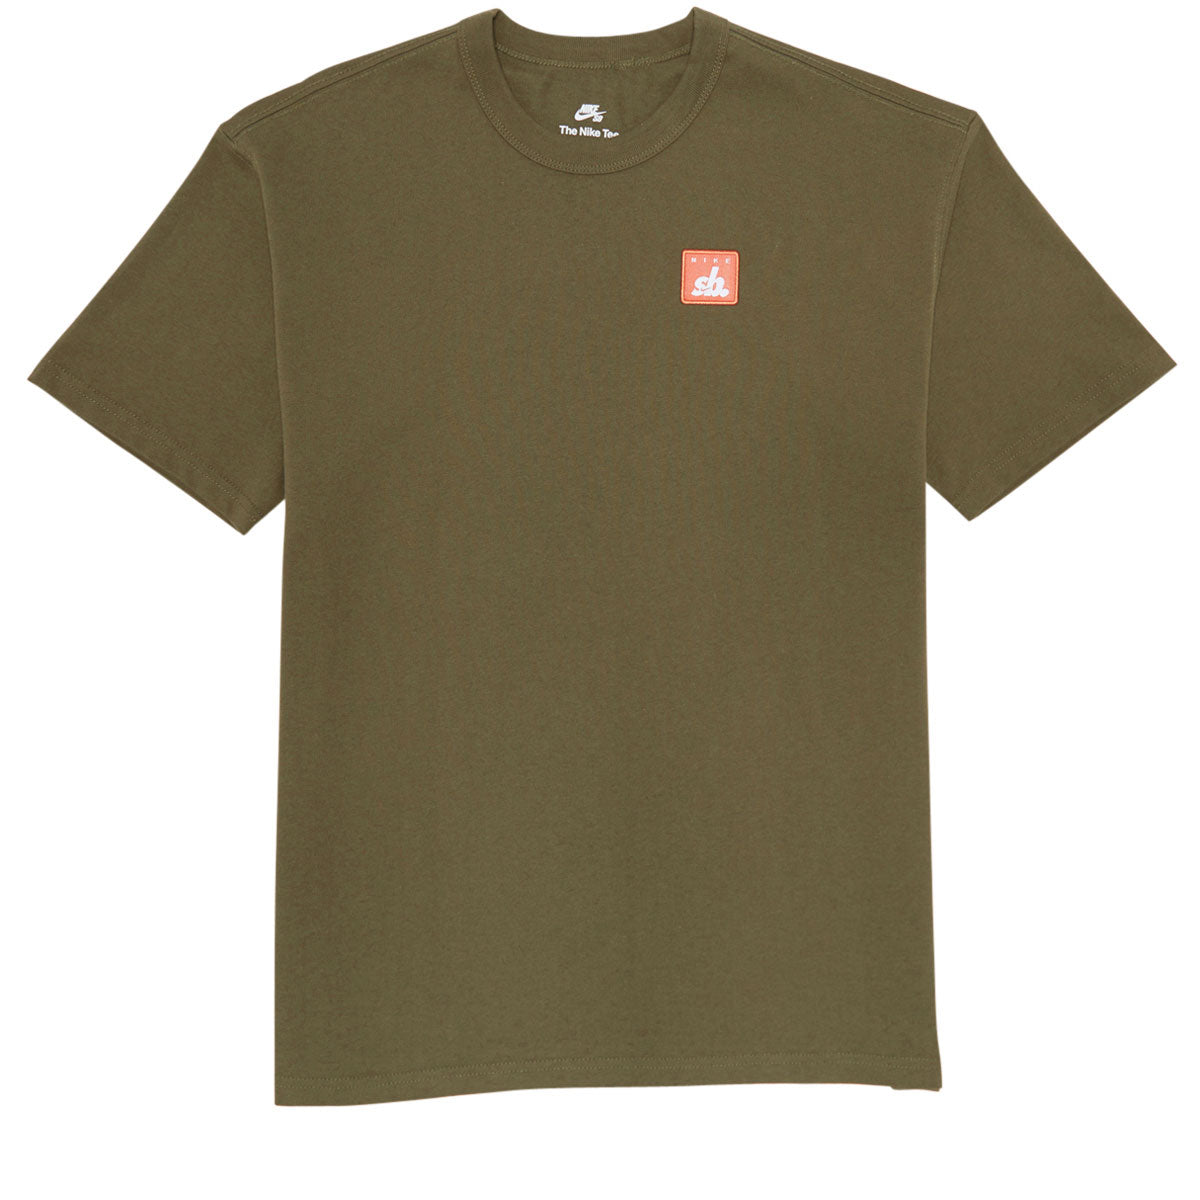 Nike SB Skate T-Shirt - Medium Olive image 1